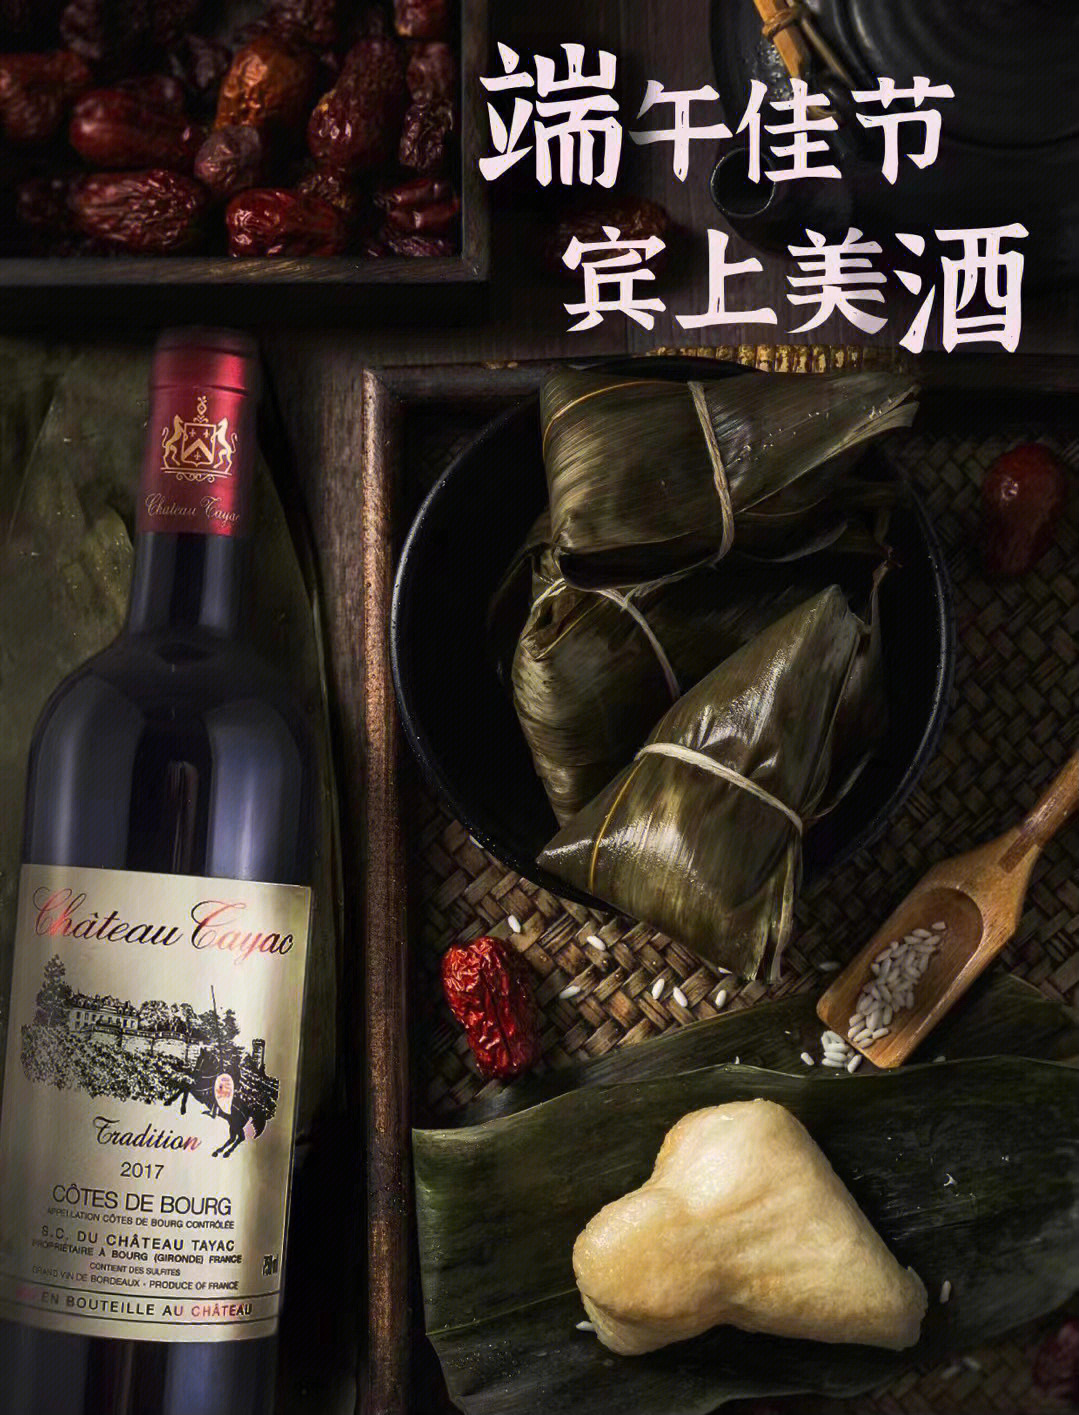 泰雅克传统干红波尔多红葡萄酒